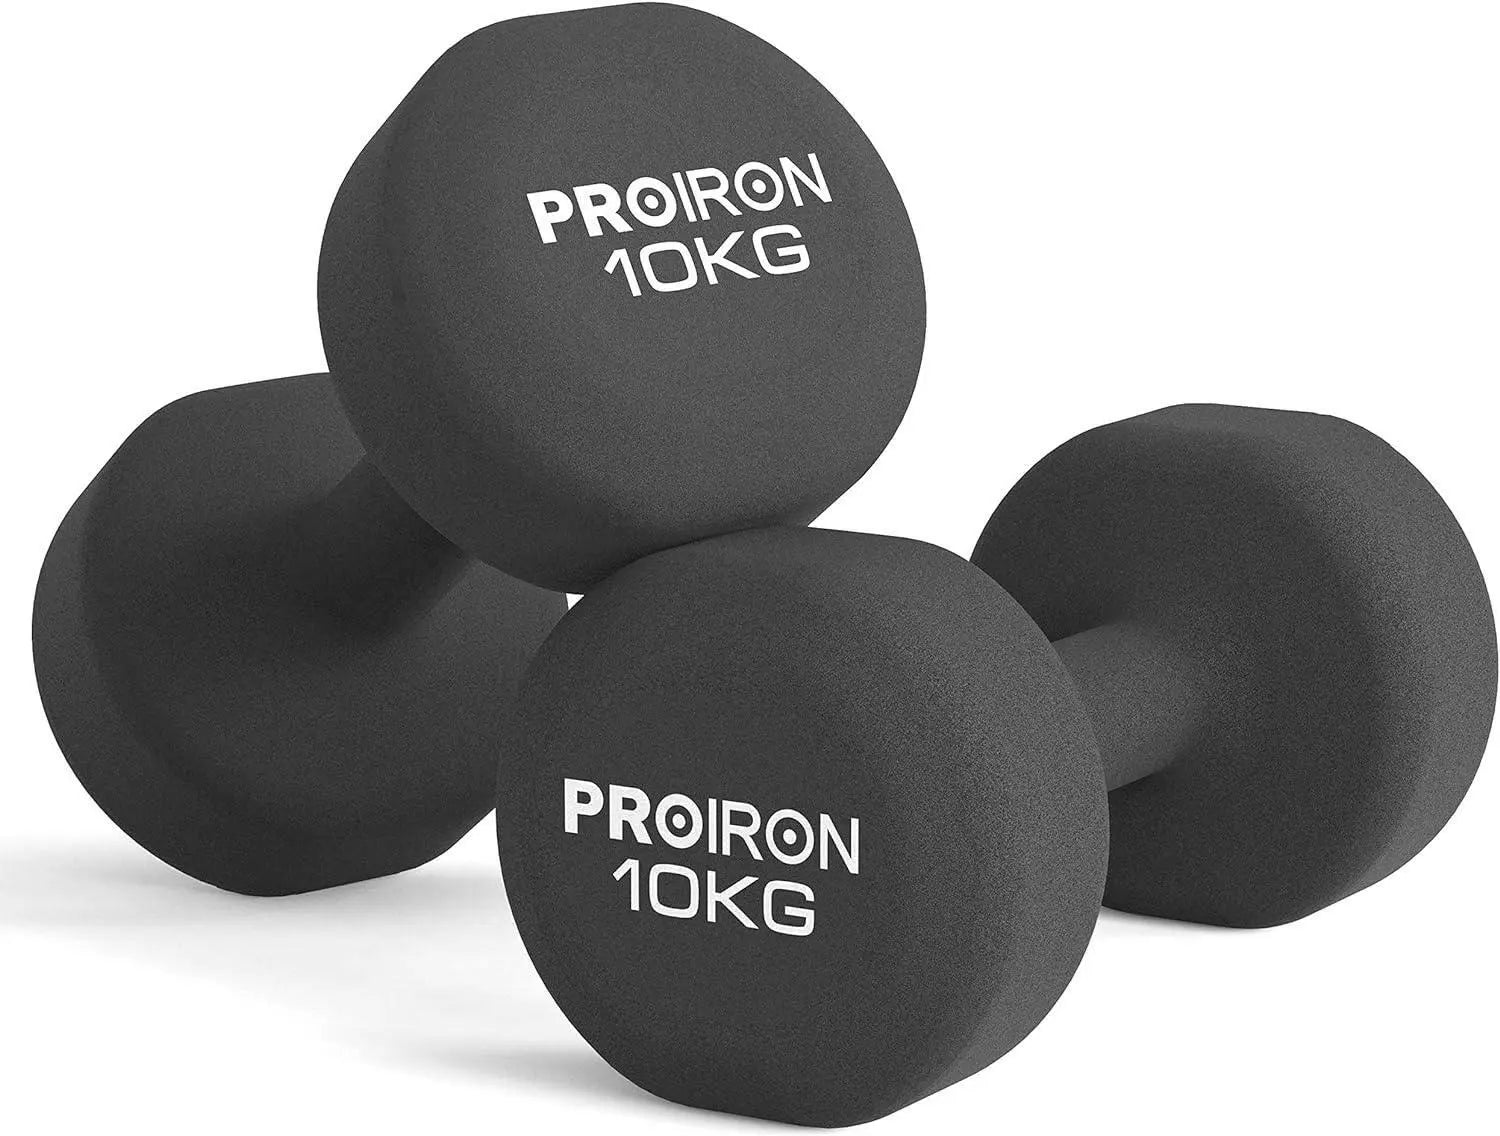 PROIRON Neoprene Dumbbells Weights Exercise & Fitness Dumbbells in 10kg Pair